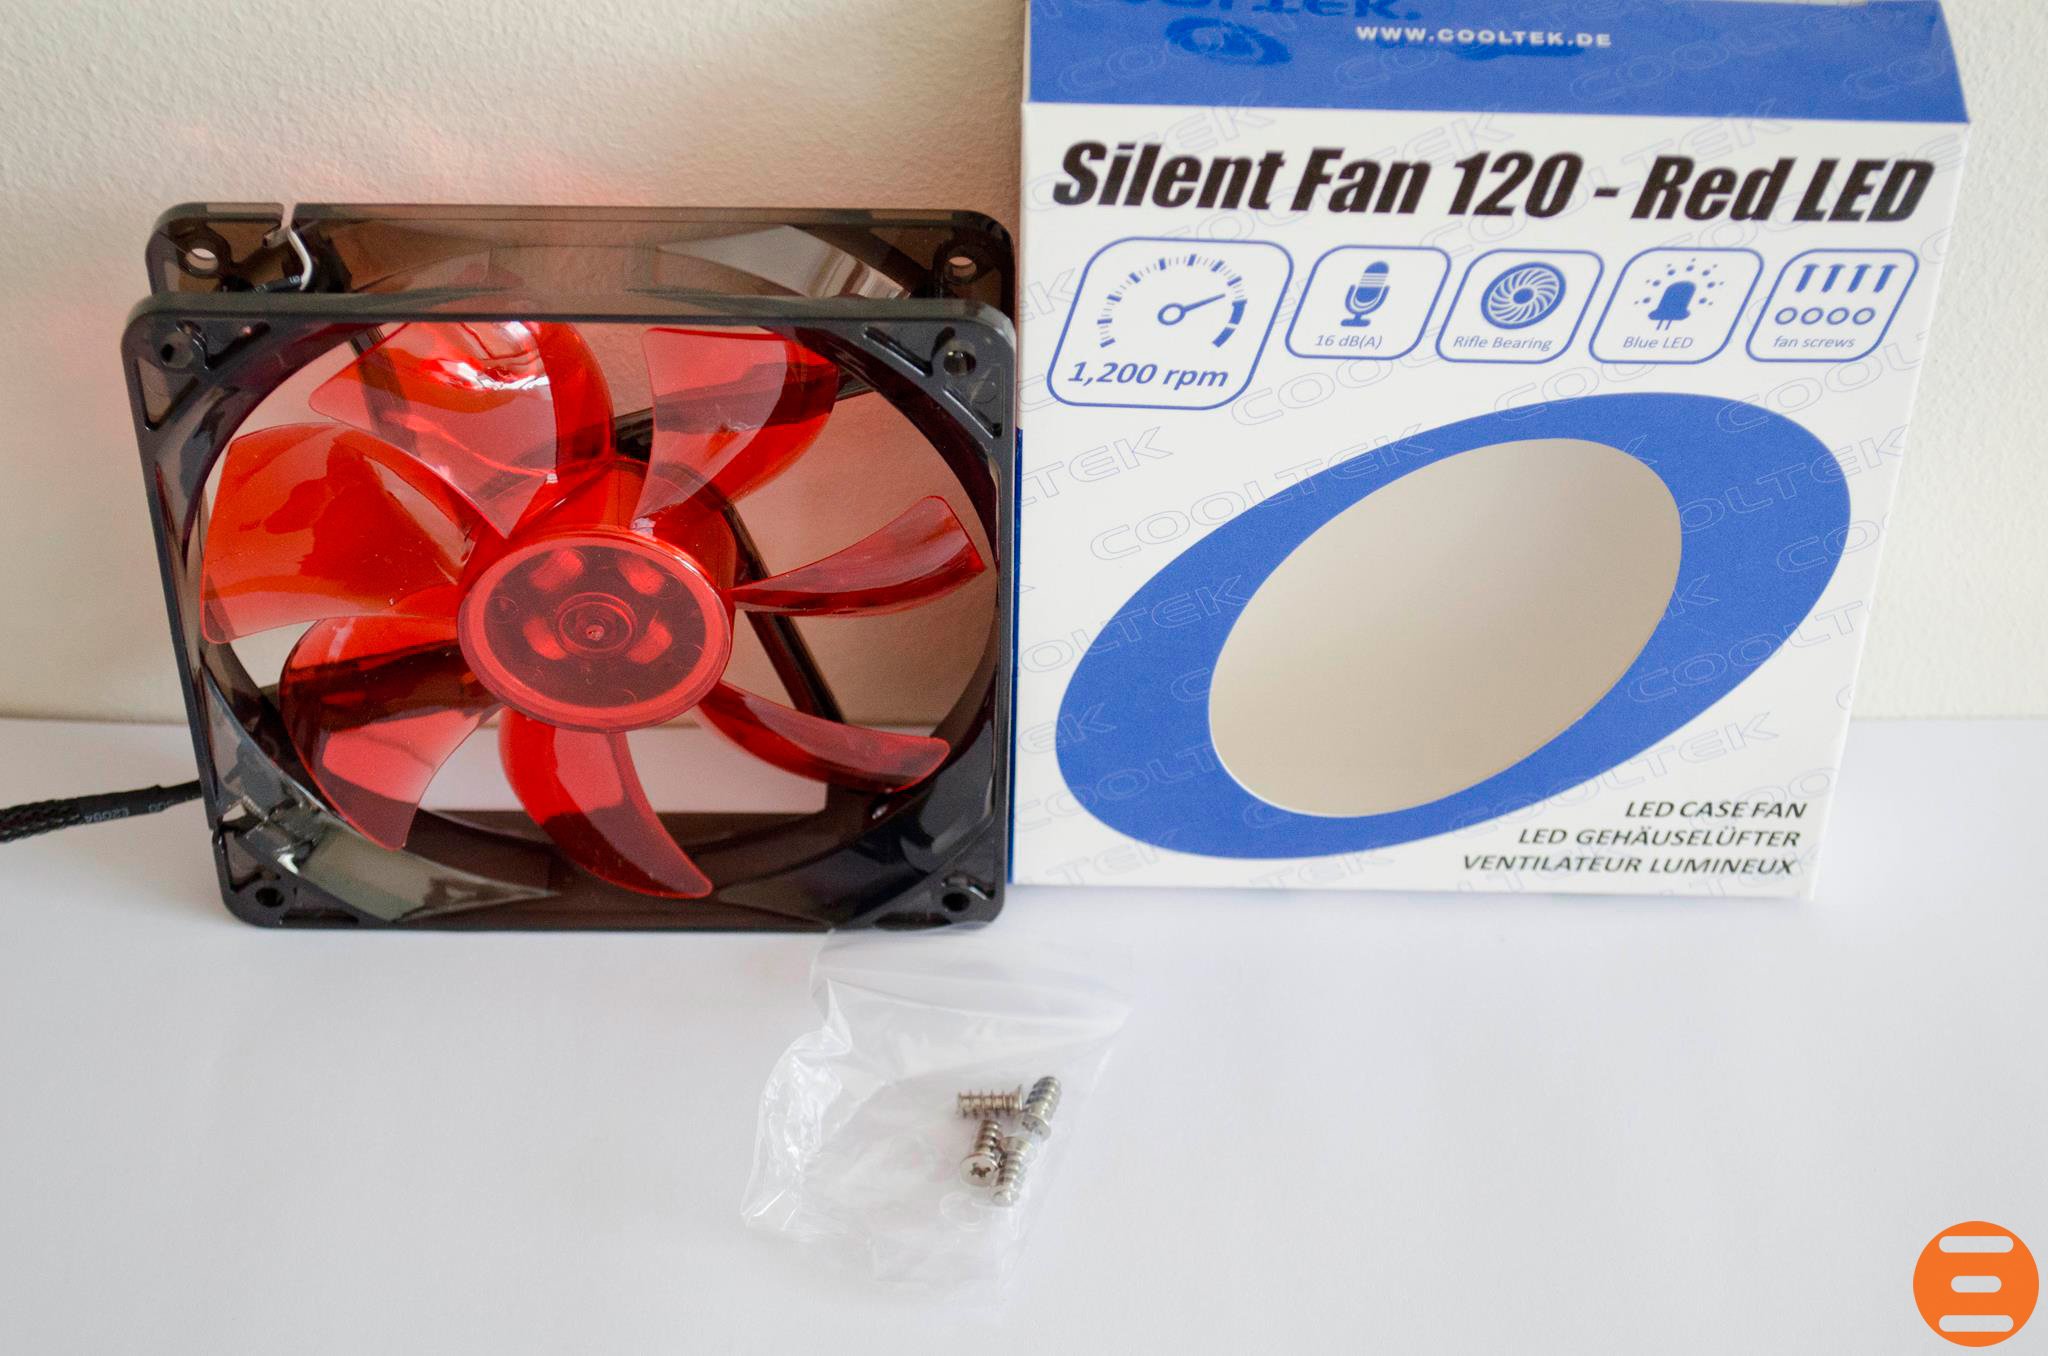 80 90 120 140 Вентиляторы увртинув. 120-140 Wd971. Разница между 120 и 140 вентиляторами. 3×120 Fan. Quiet fan